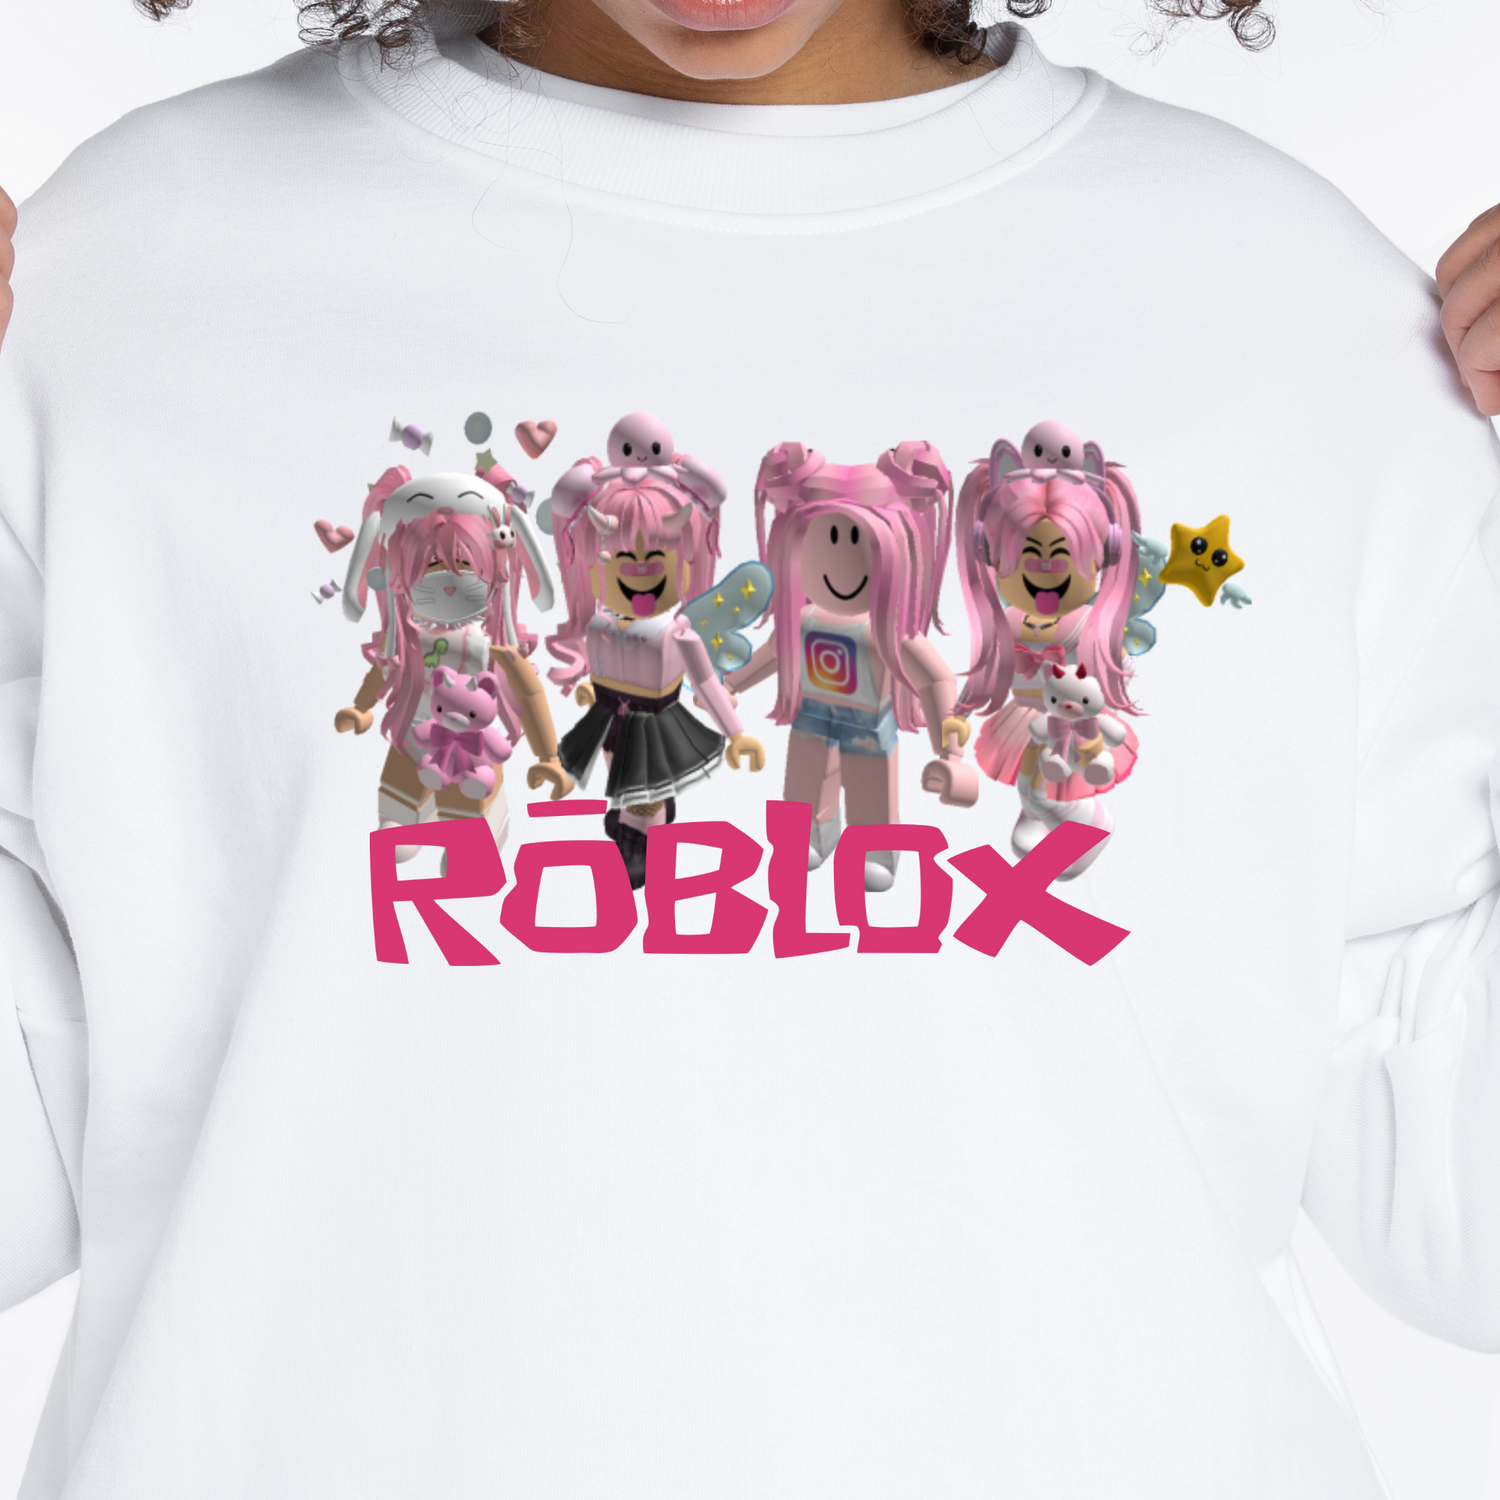 Roblox Shirt Roblox Tshirt / Roblox for Girl tshirt / Roblox for